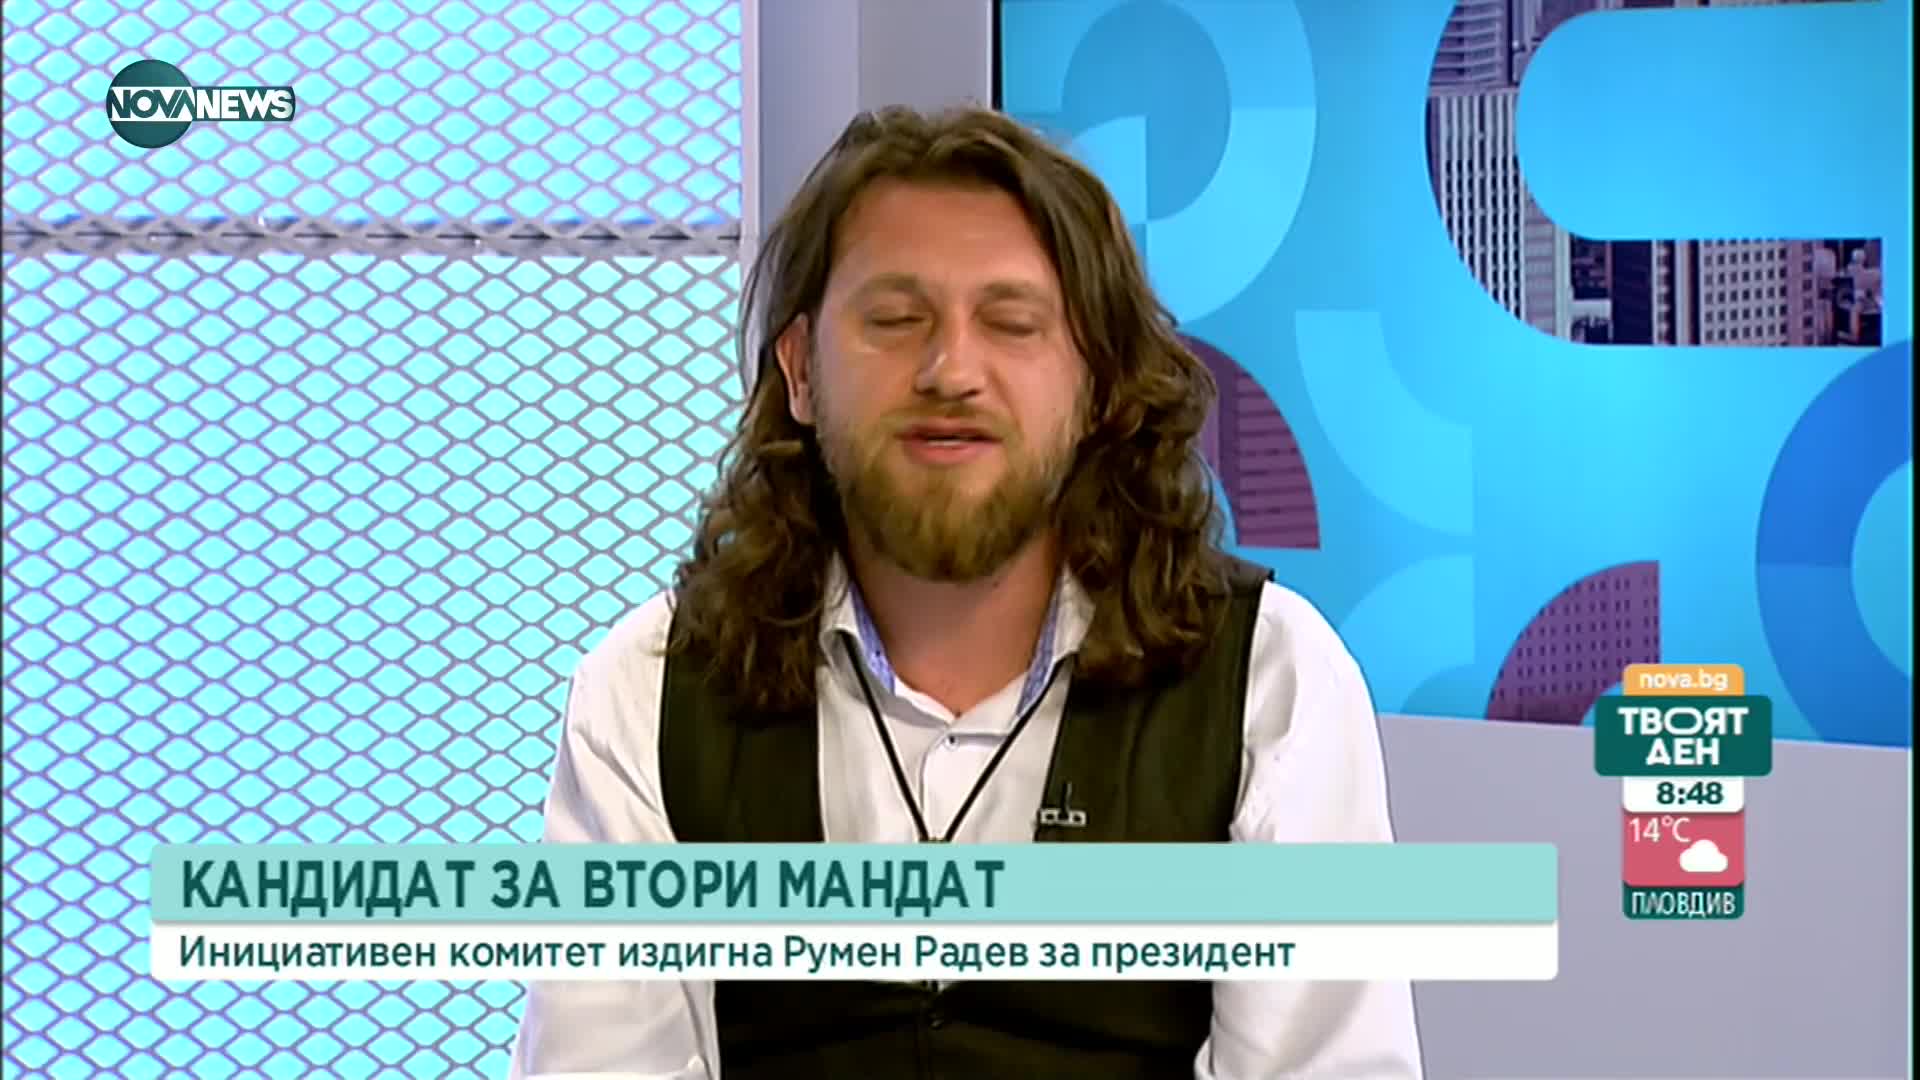 Актьорът Веселин Плачков показа отрицателен тест в "Твоят ден" по NOVA NEWS